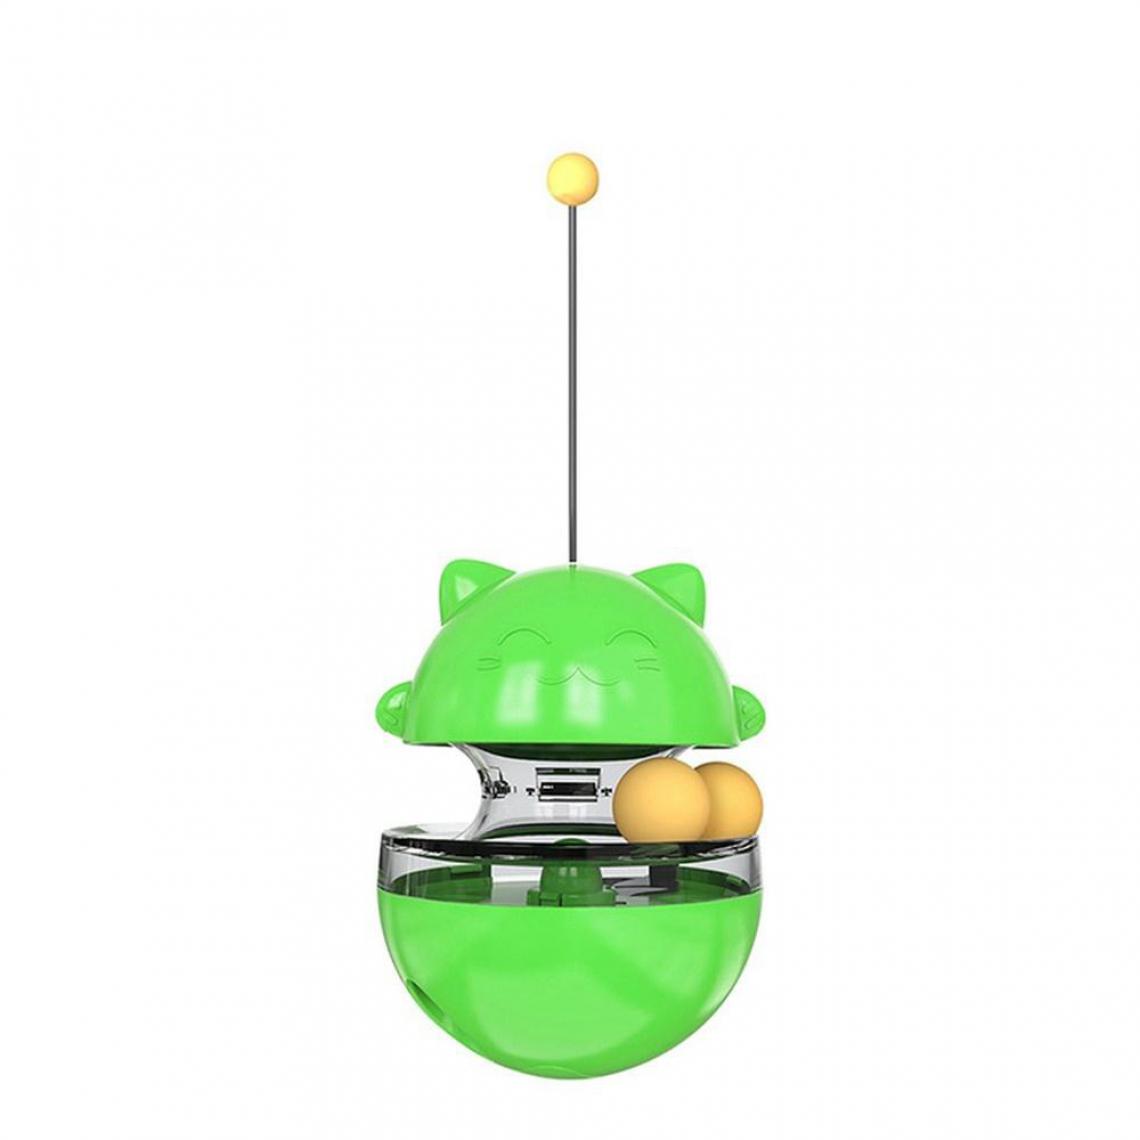 Justgreenbox - Chat Tumbler Toys Chat Jouet Interactif Boules de Nourriture pour Chat, Vert - Jouet pour chien